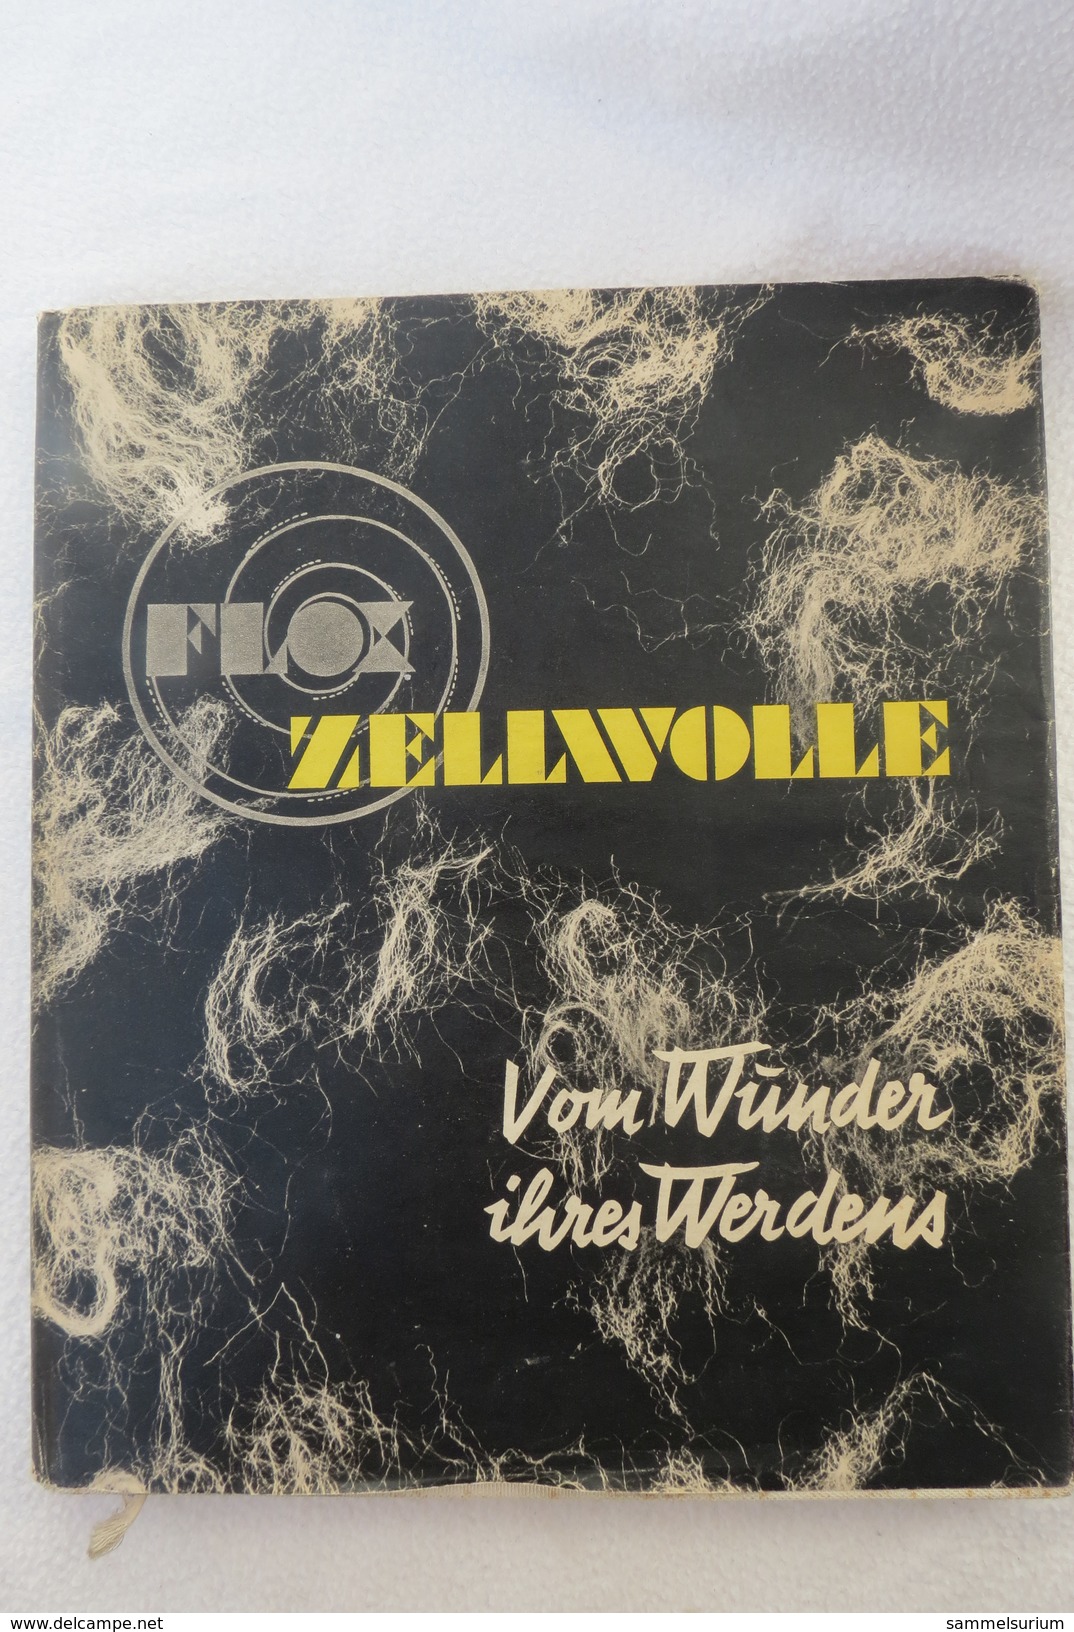 Paul G. Ehrhardt "Zellwolle" Vom Wunder Ihres Werdens, Von 1938 - Technical